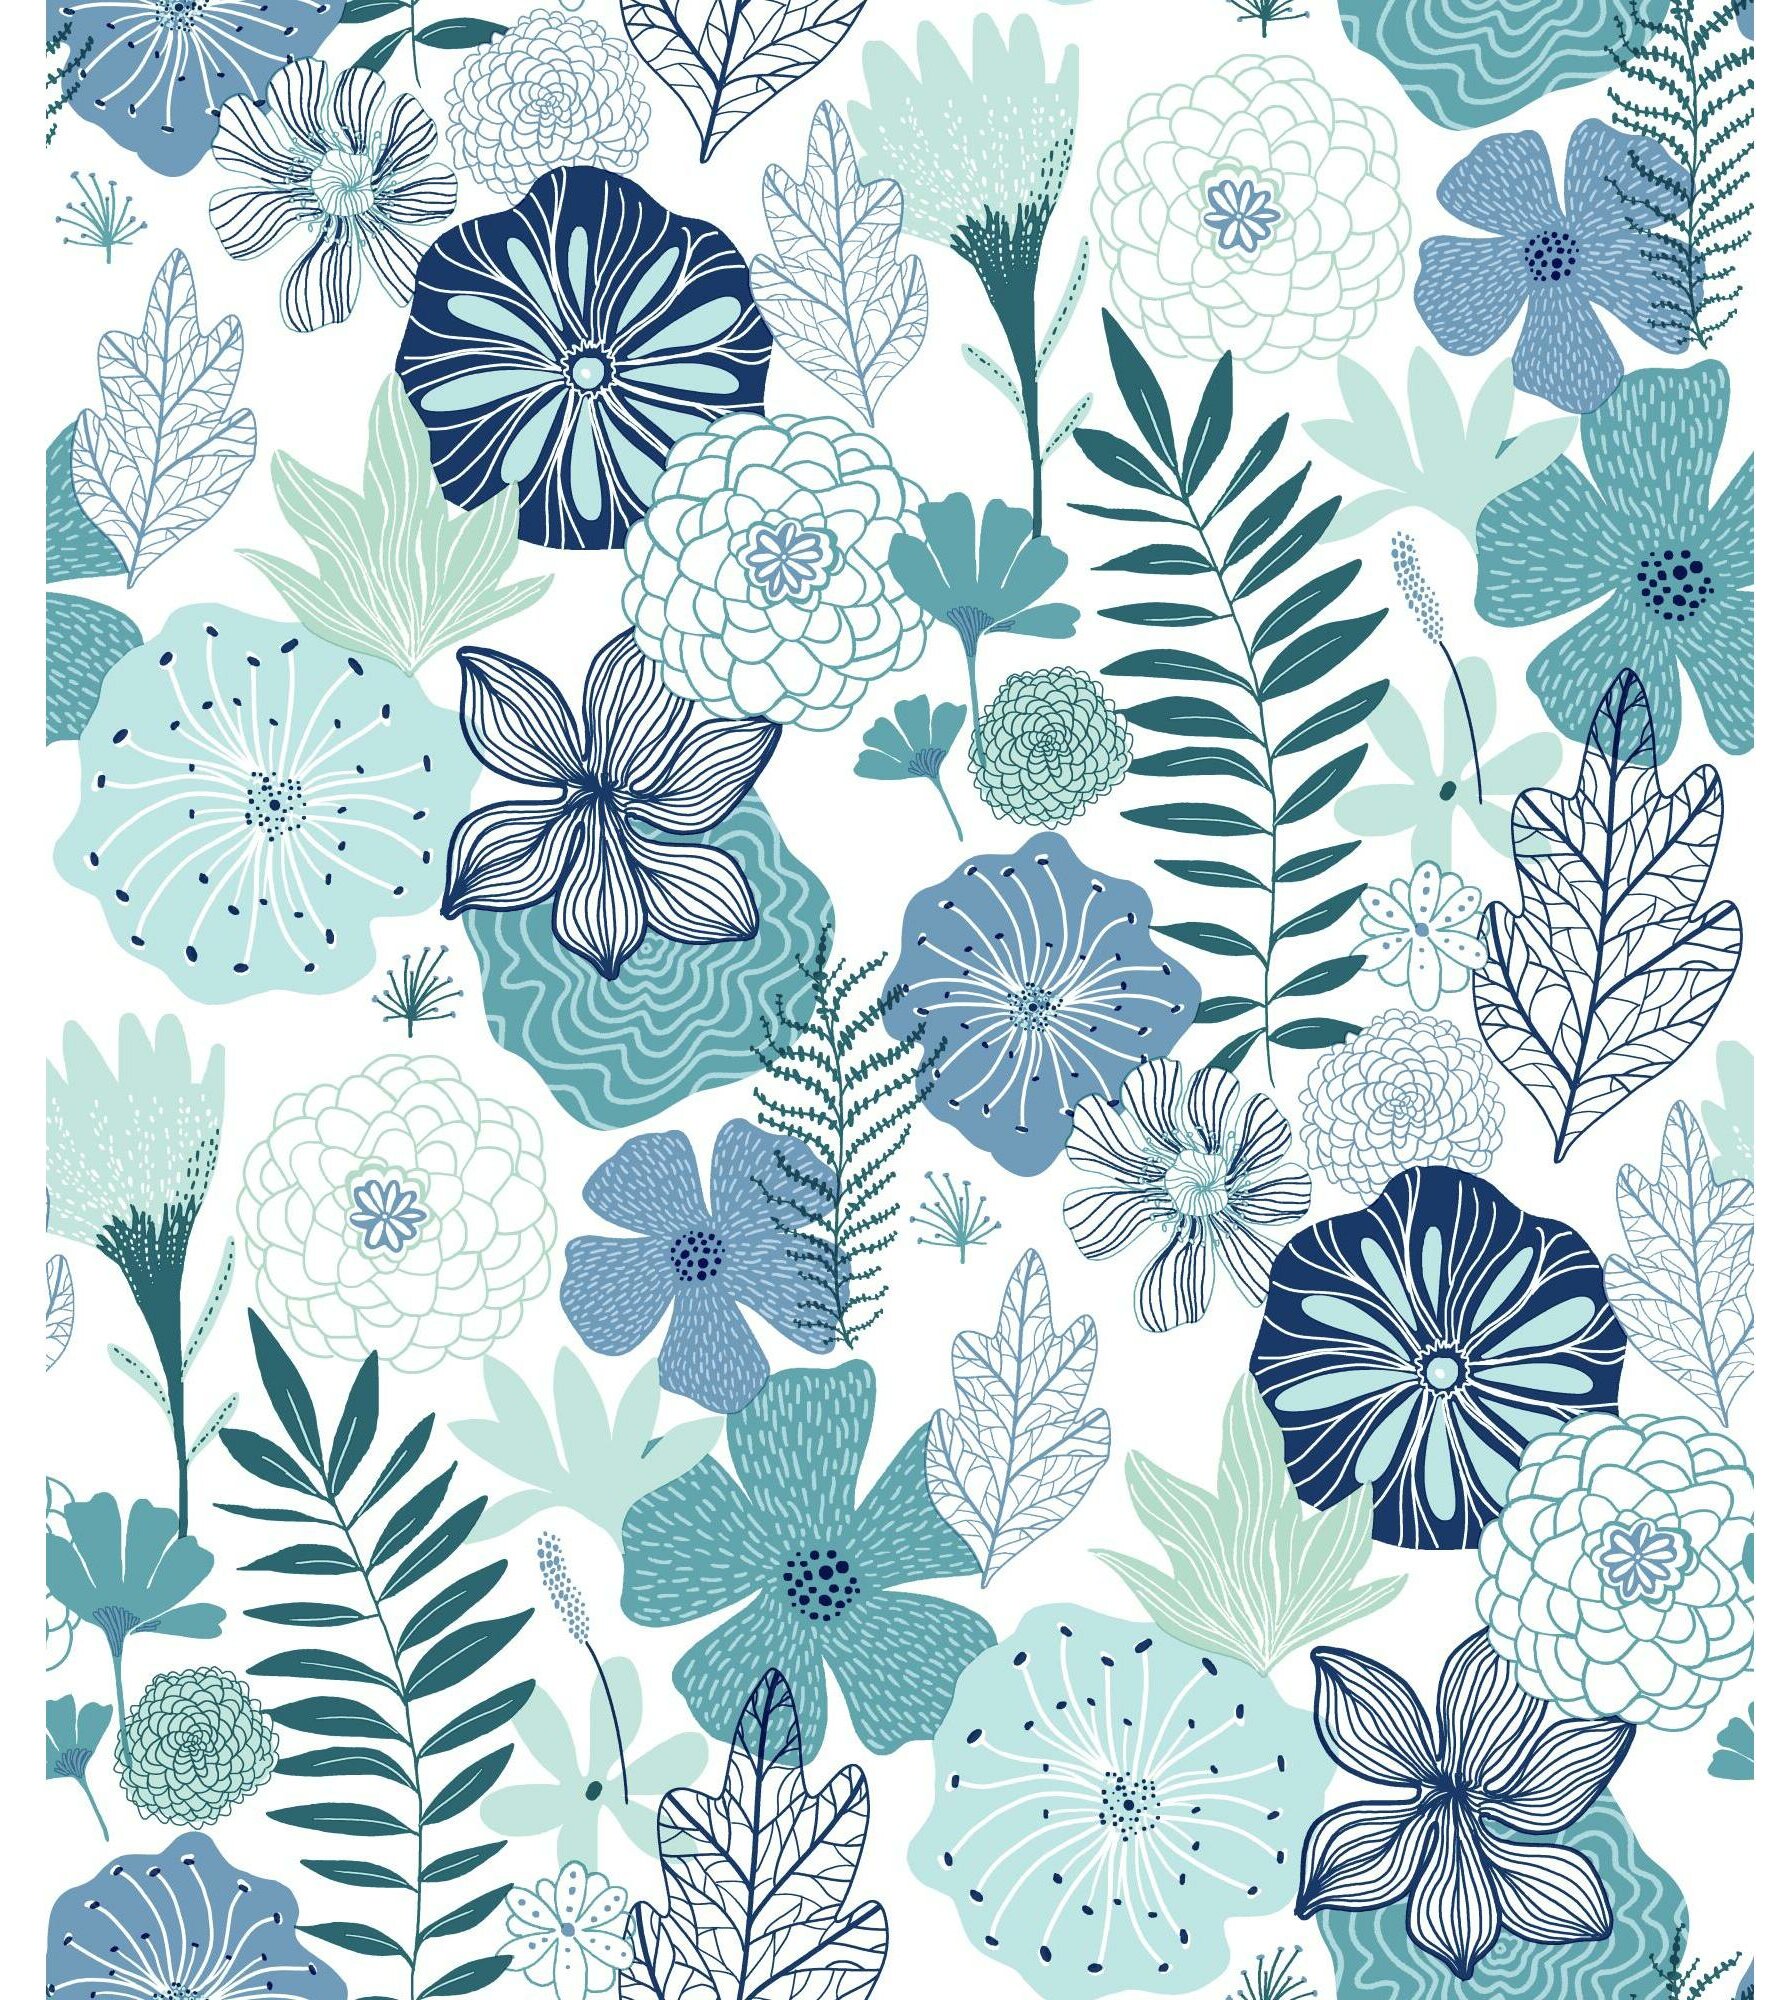 Ebern Designs Weese Peel & Stick Floral Wallpaper & Reviews | Wayfair